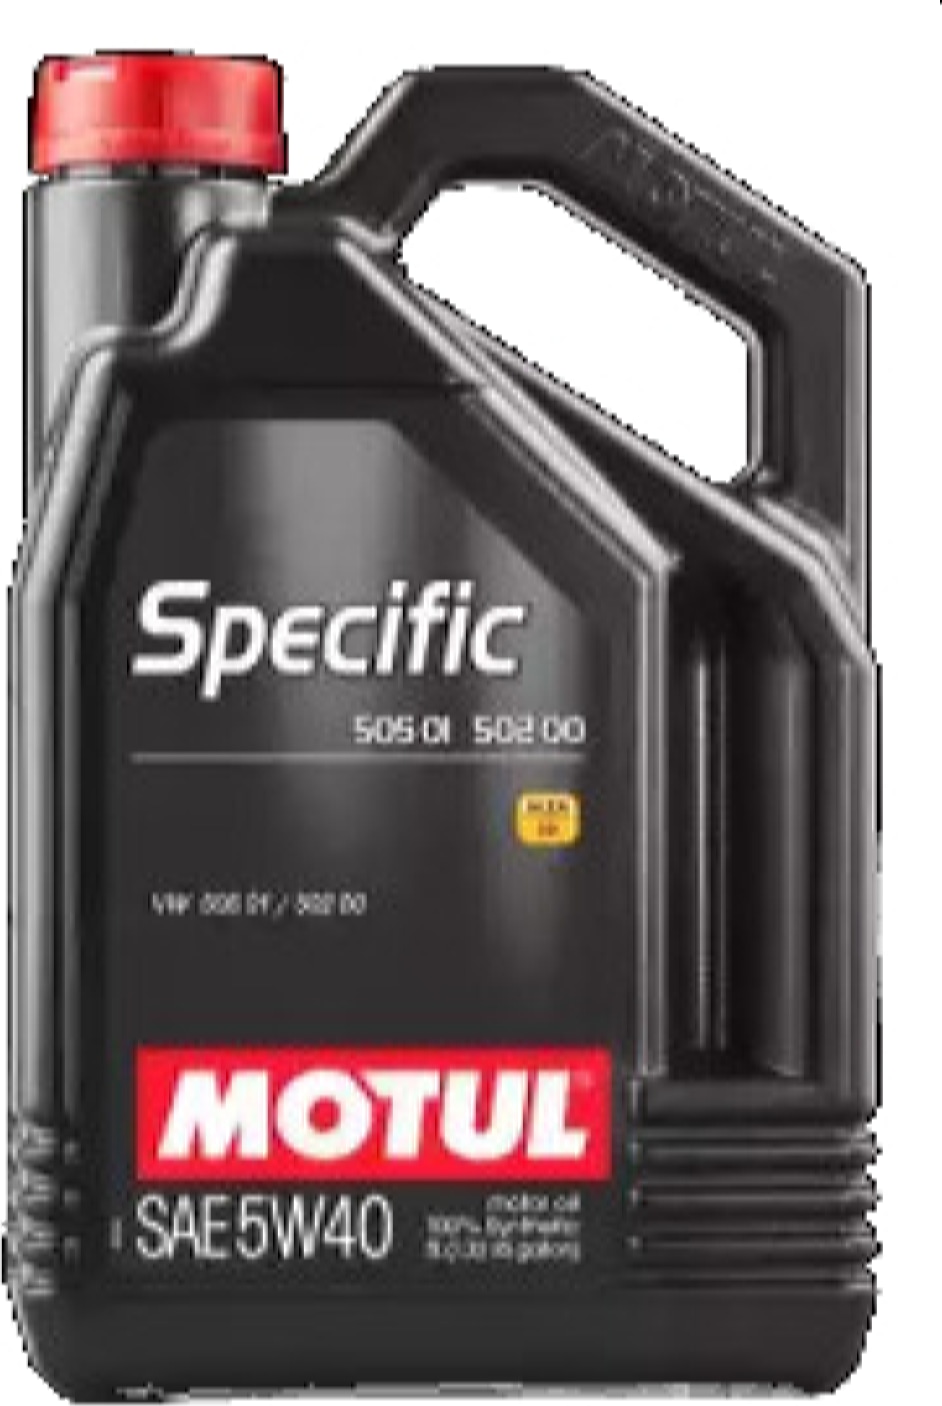 MOTUL 101575 Motul 5w40 (5l) specific vw масло моторное (синт.) vw 505.01/502.00/505.00 купить в Самаре